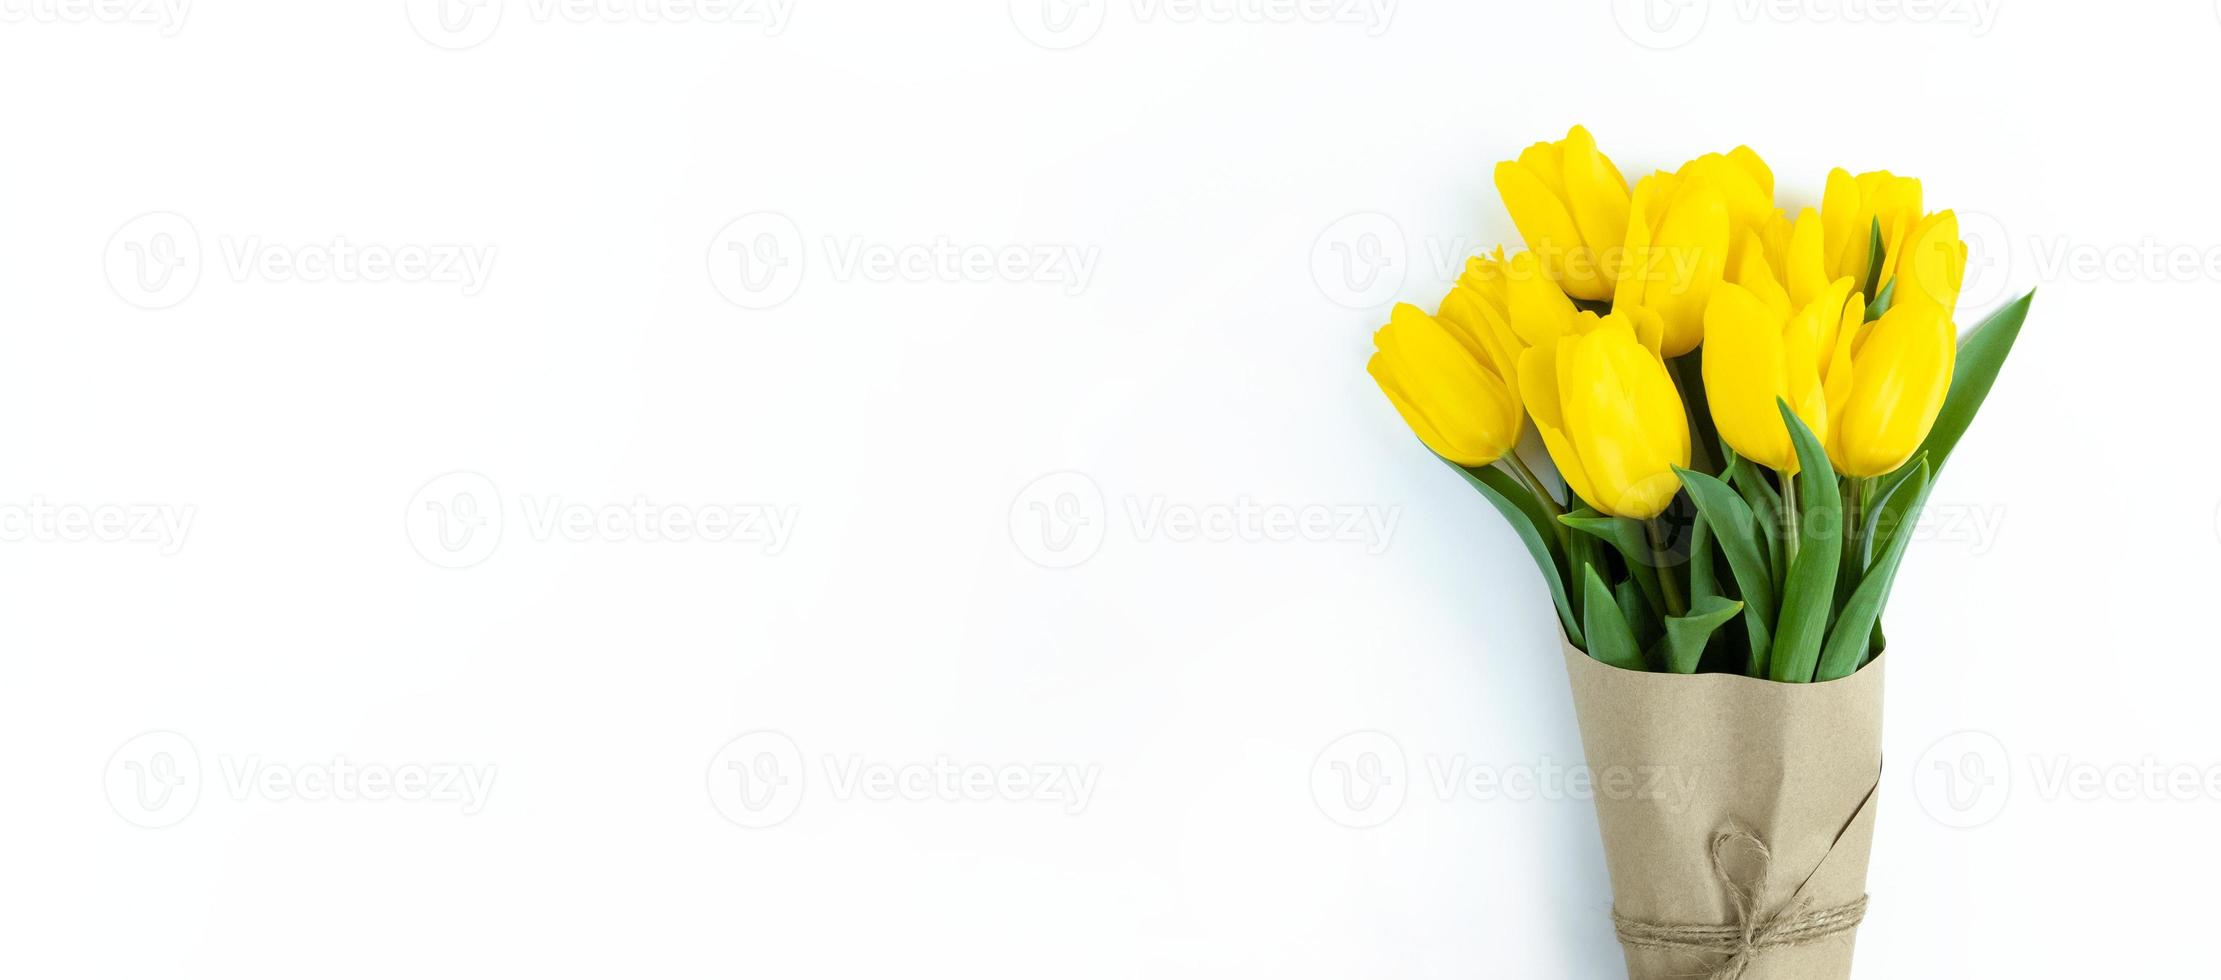 buquê de tulipas amarelas embrulhadas em papel ofício em fundo branco com espaço de cópia. foto